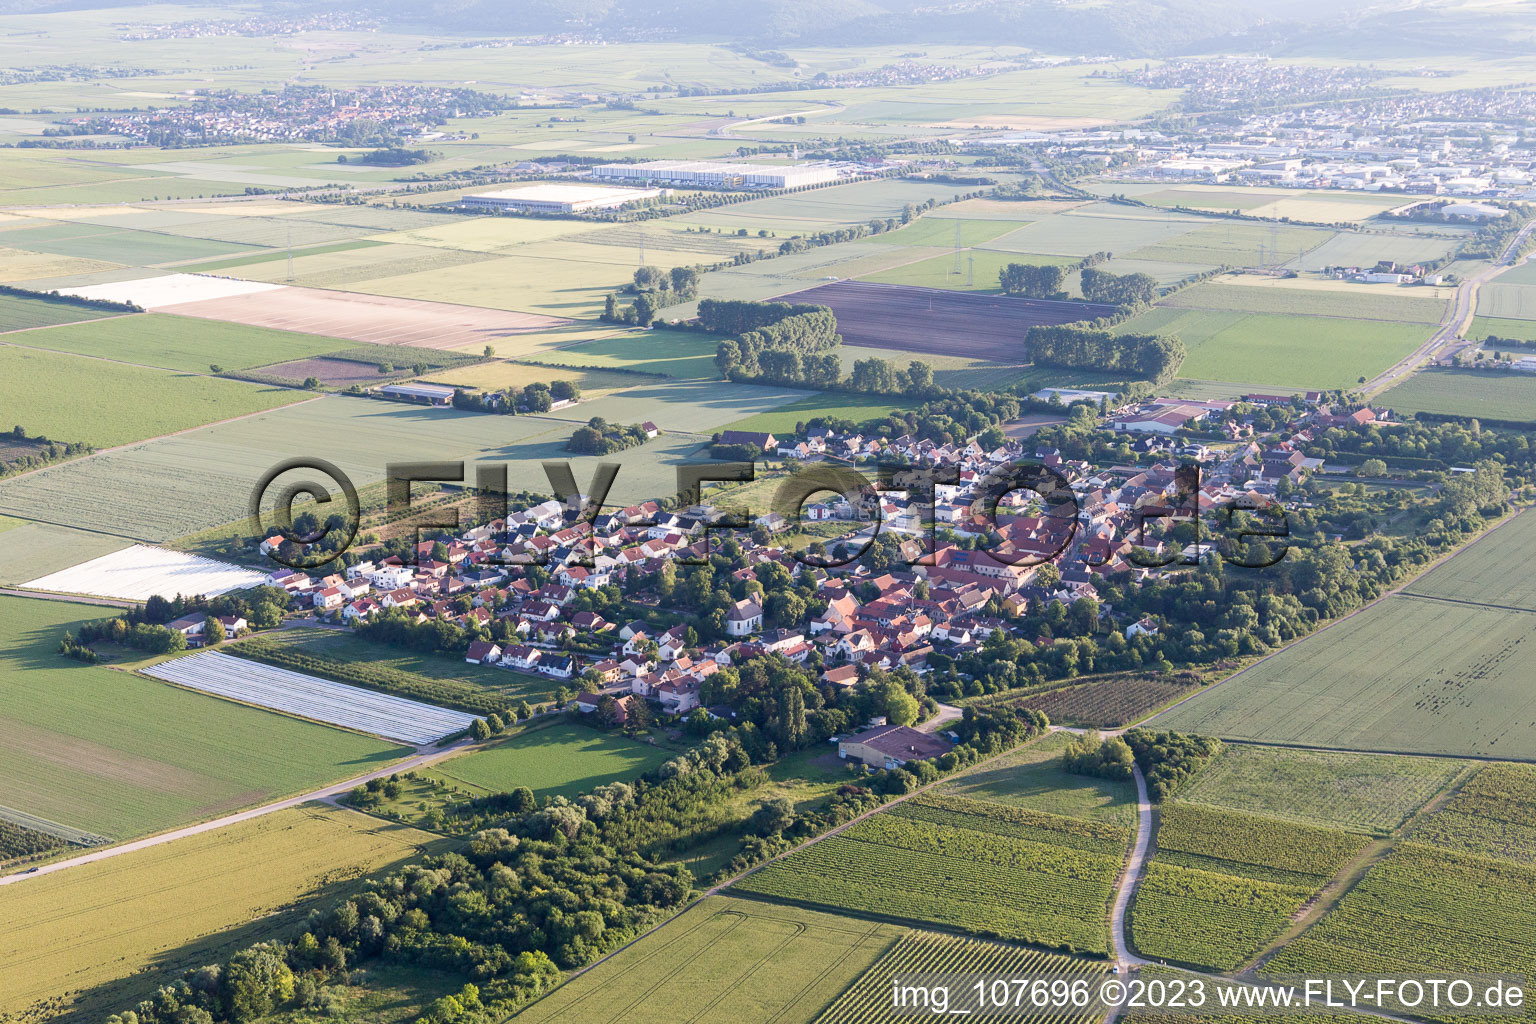 Vue aérienne de Obersülzen dans le département Rhénanie-Palatinat, Allemagne